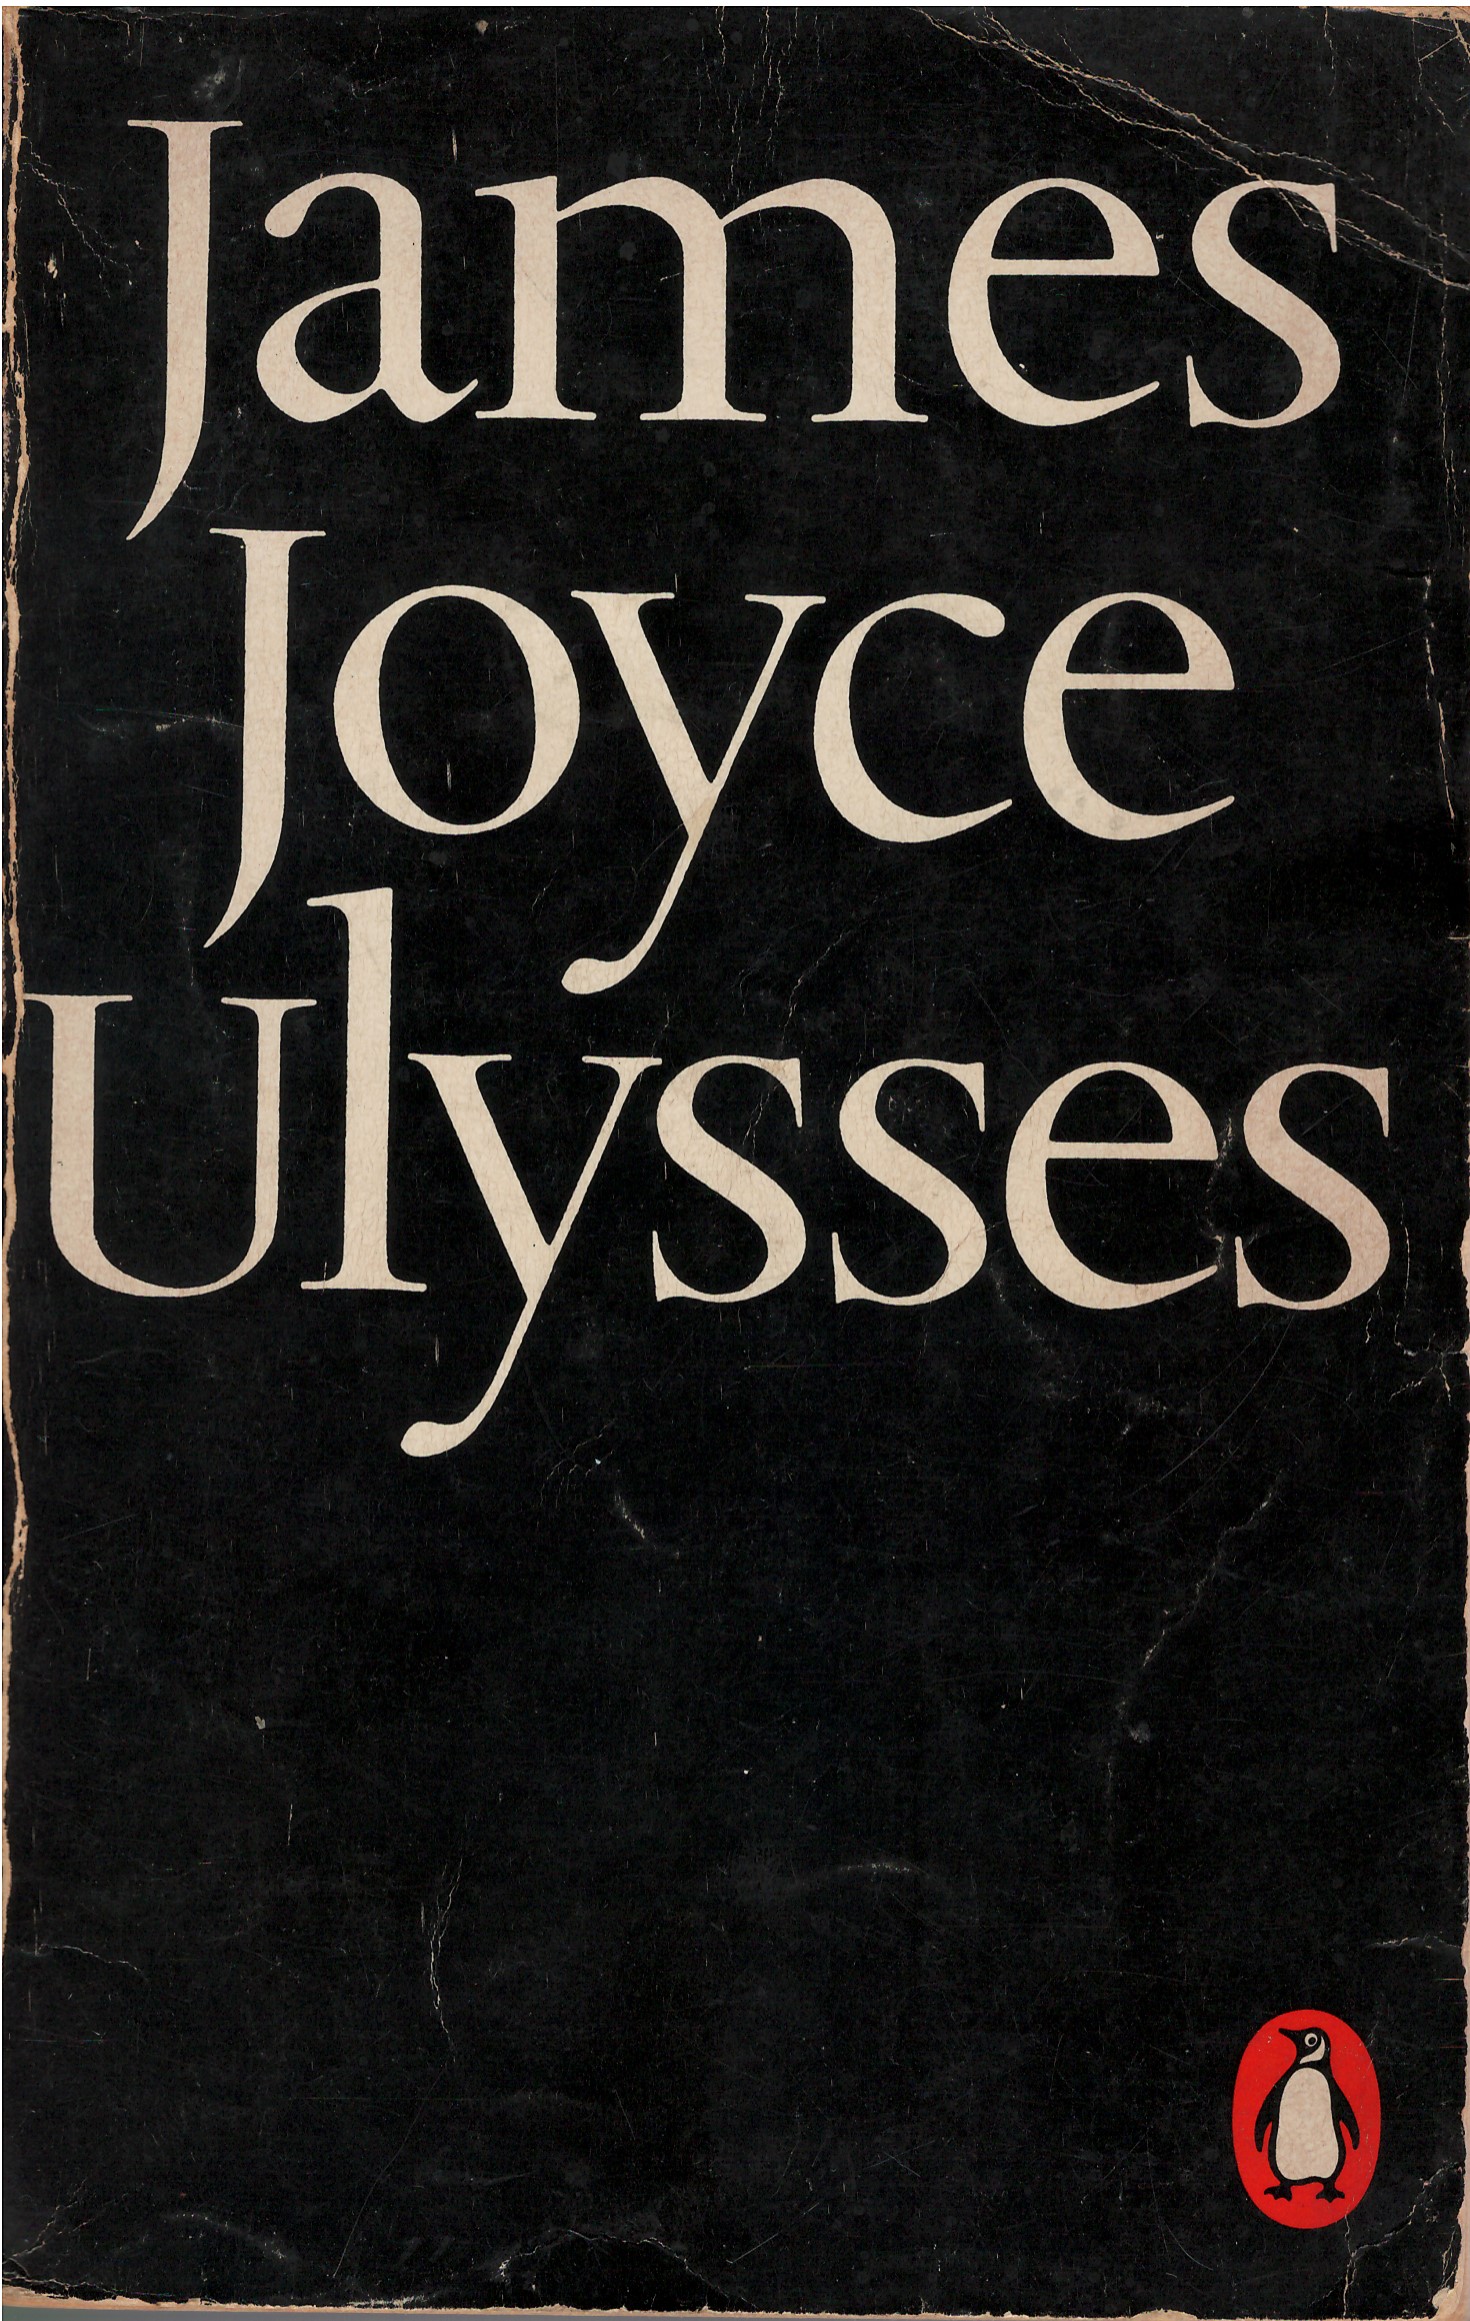 Ulysses given to Anthony Akerman by Glen